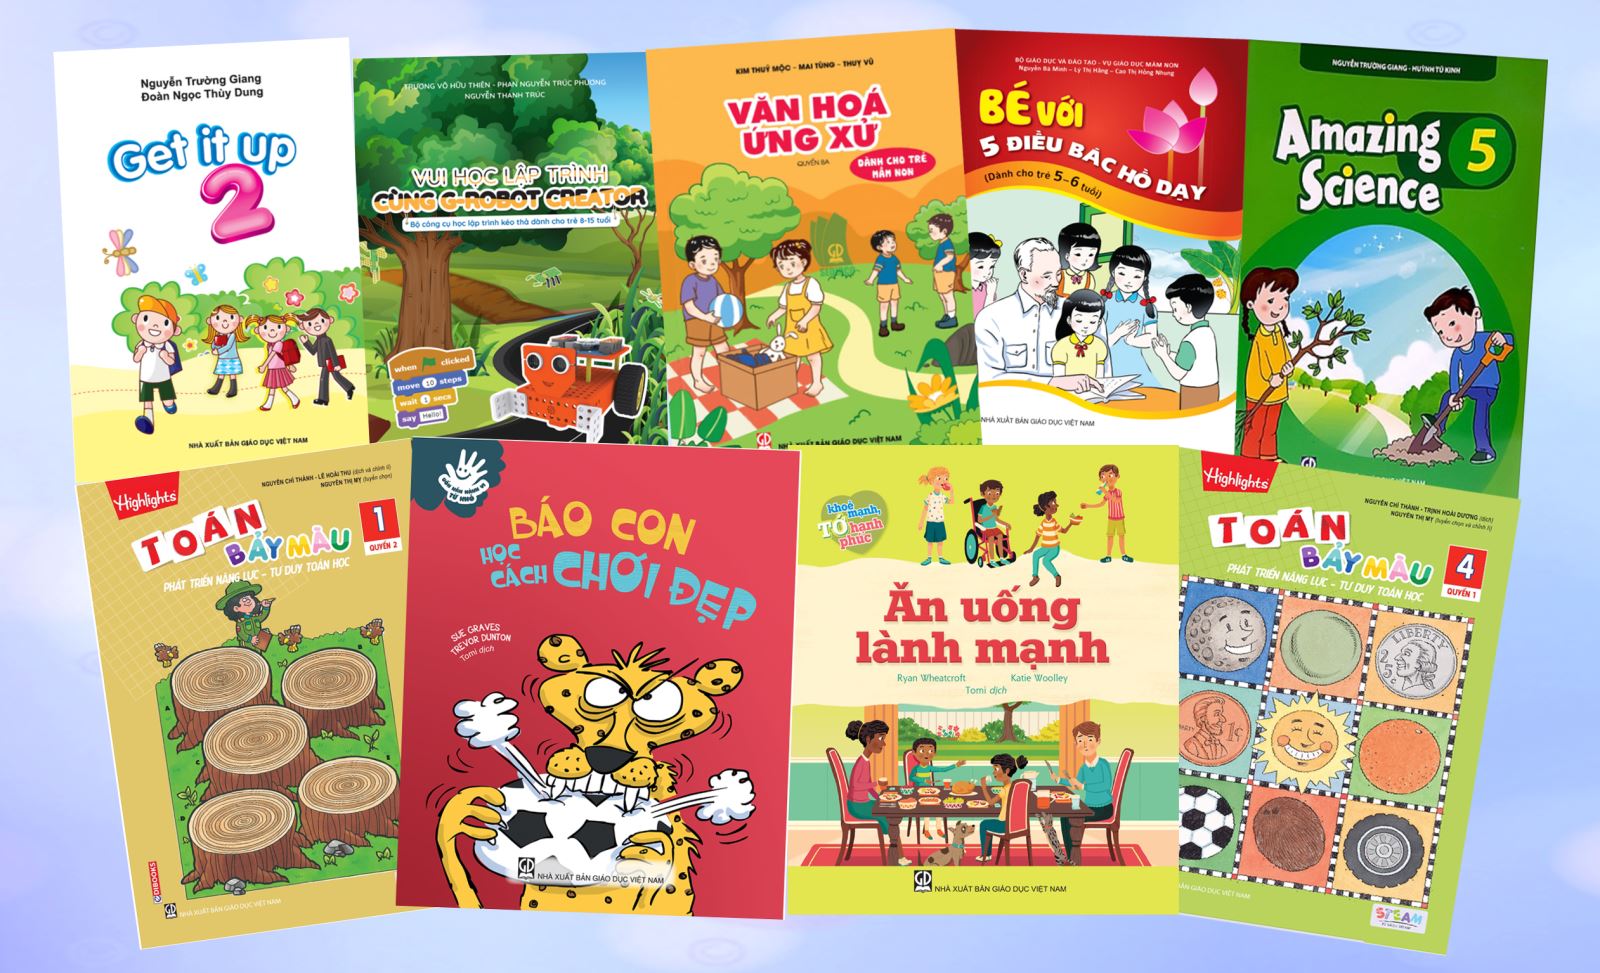 Danh mục sách tham khảo phát hành tháng 7 của NXB Giáo dục Việt Nam  